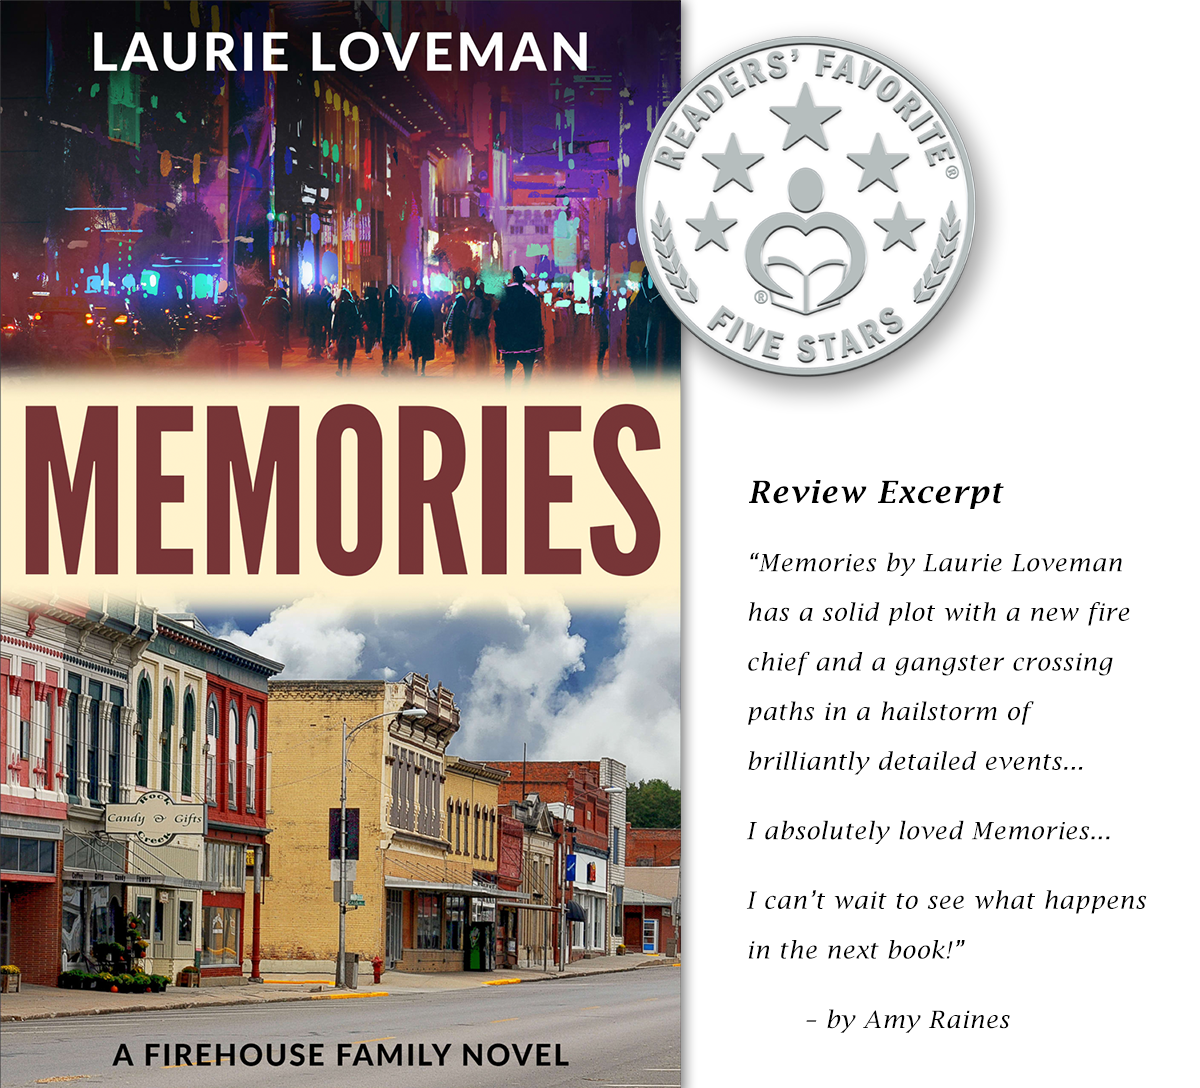 Memories by Laurie Loveman